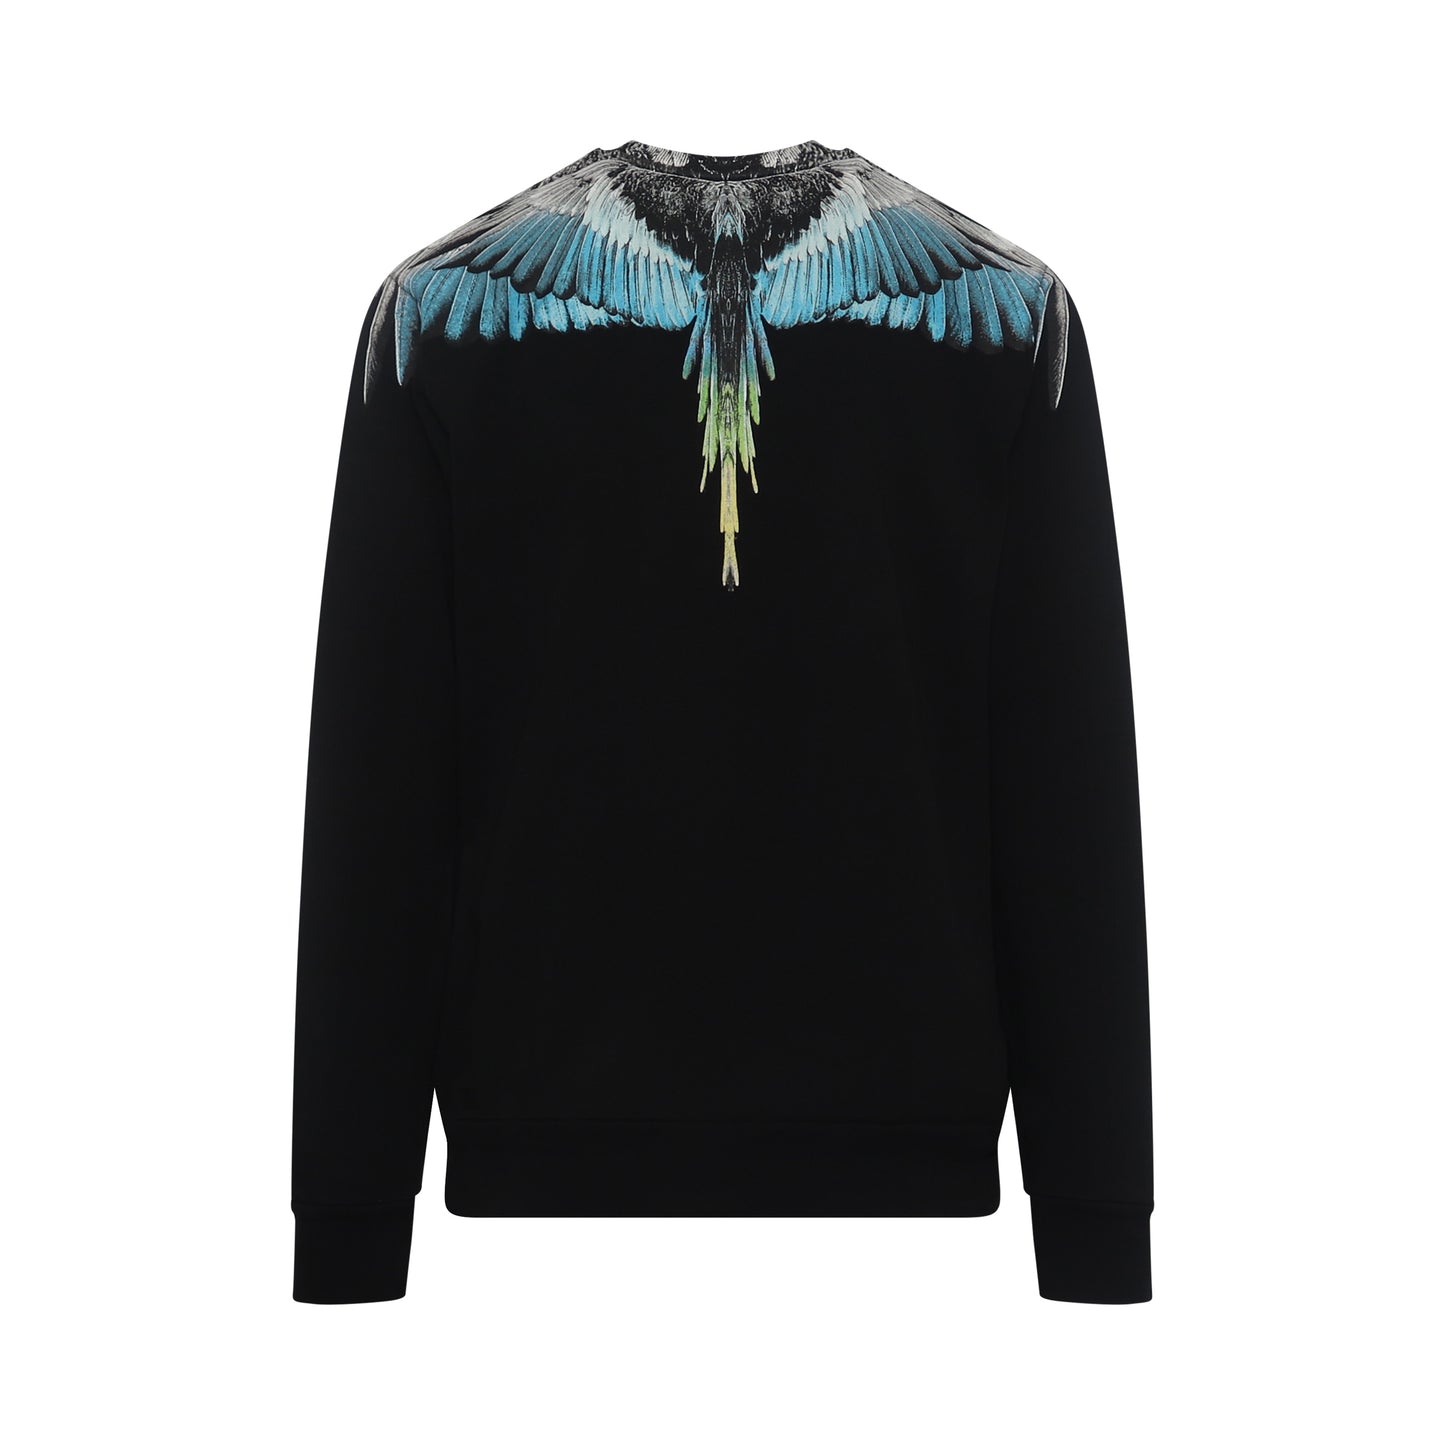 Classic Wings Print Sweatshirt in Black/Blue